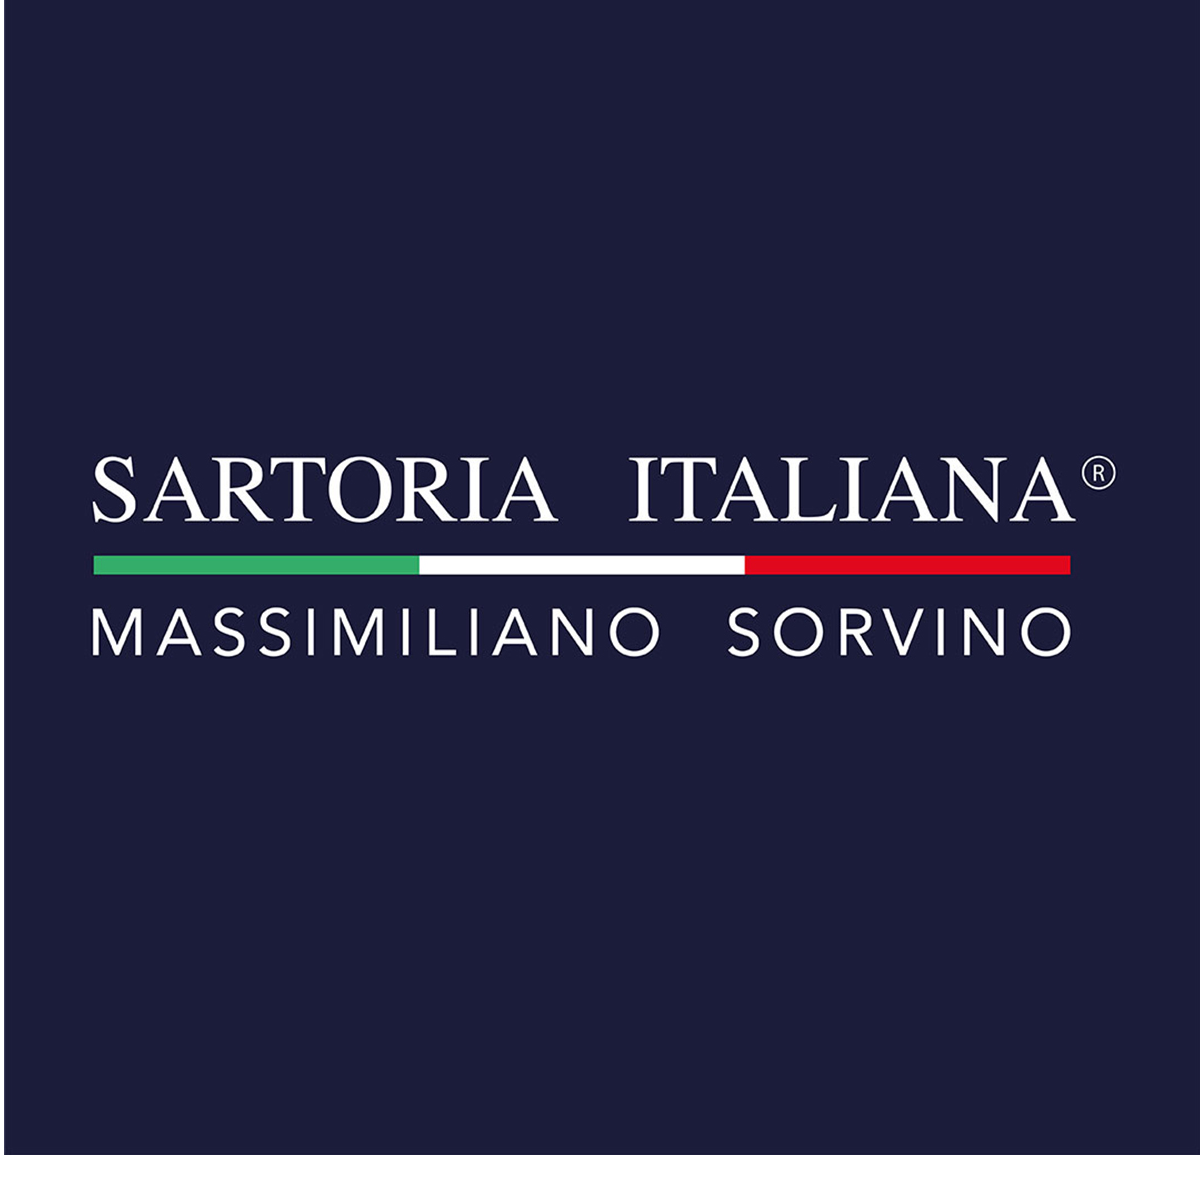 Radio Sartoria Italiana